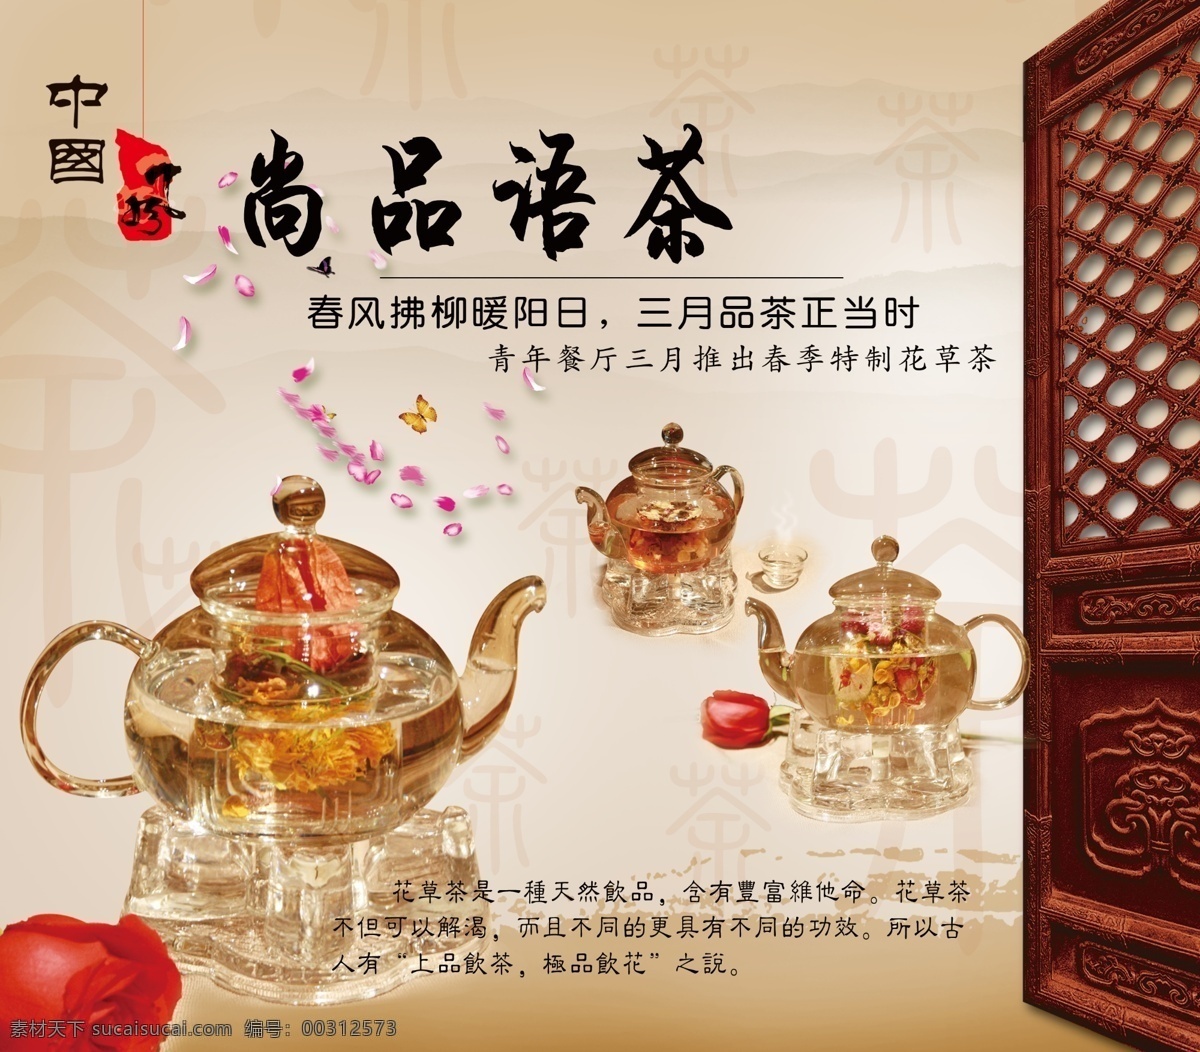 茶水广告 花草茶 广告 中国风 古典 玫瑰 广告设计模板 源文件